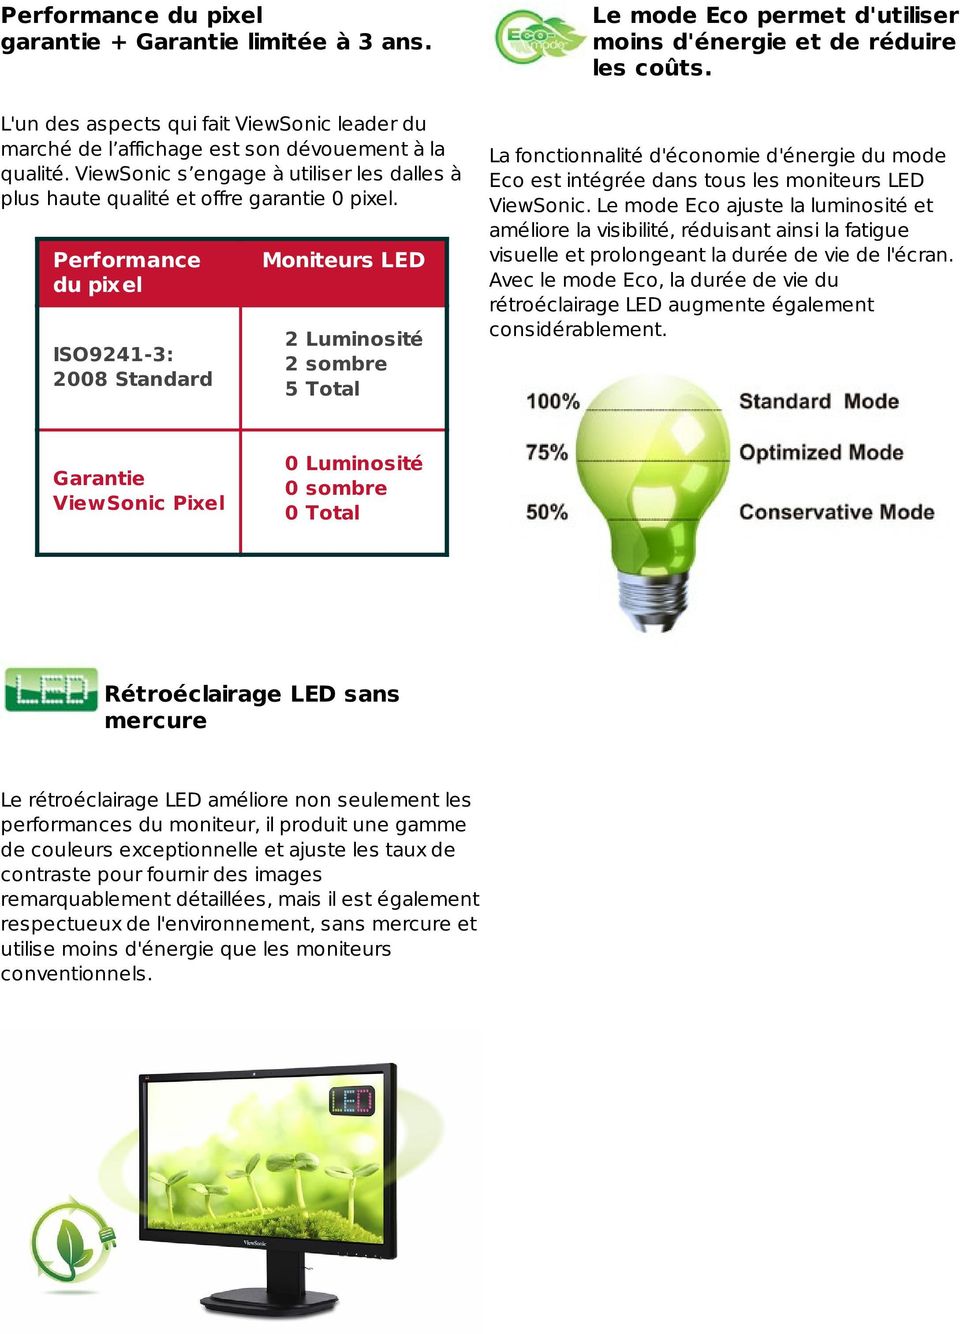 Performance du pixel ISO9241-3: 2008 Standard Moniteurs LED 2 Luminosité 2 sombre 5 Total Le mode Eco permet d'utiliser moins d'énergie et de réduire les coûts.